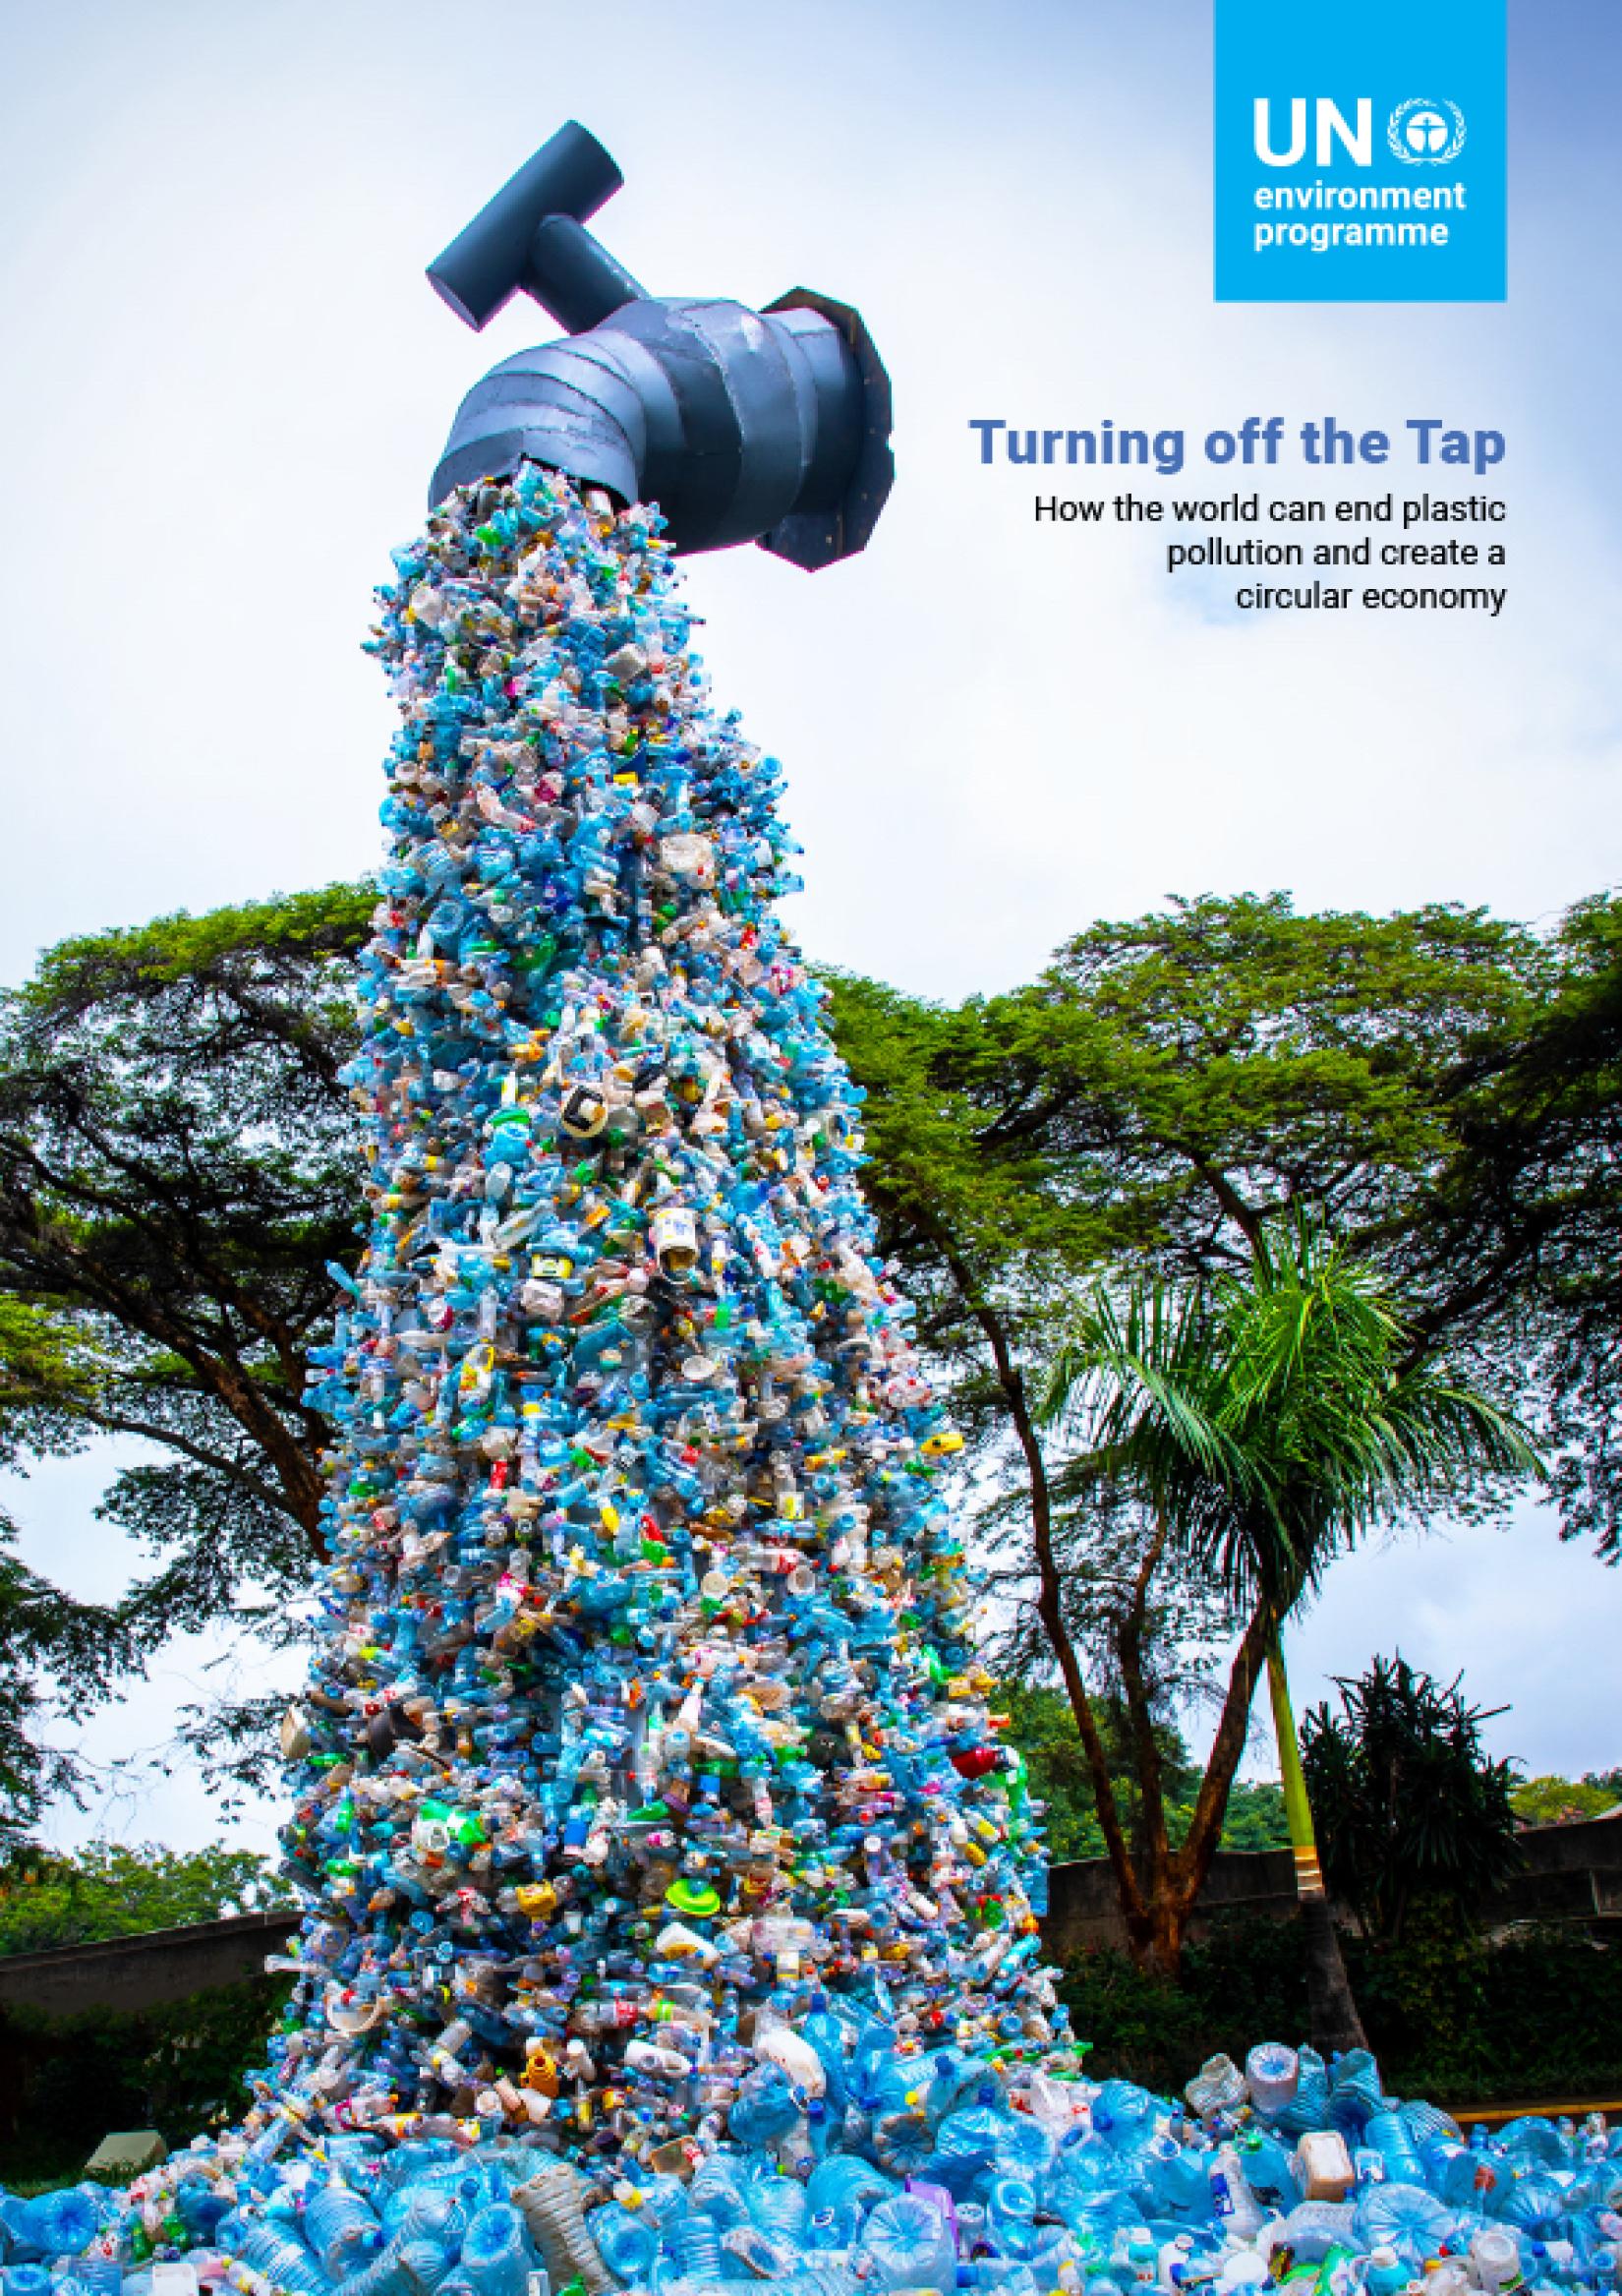 Capa do Relatório do PNUMA Fechando a torneira: como o mundo pode acabar com a poluição plástica e criar uma economia circular